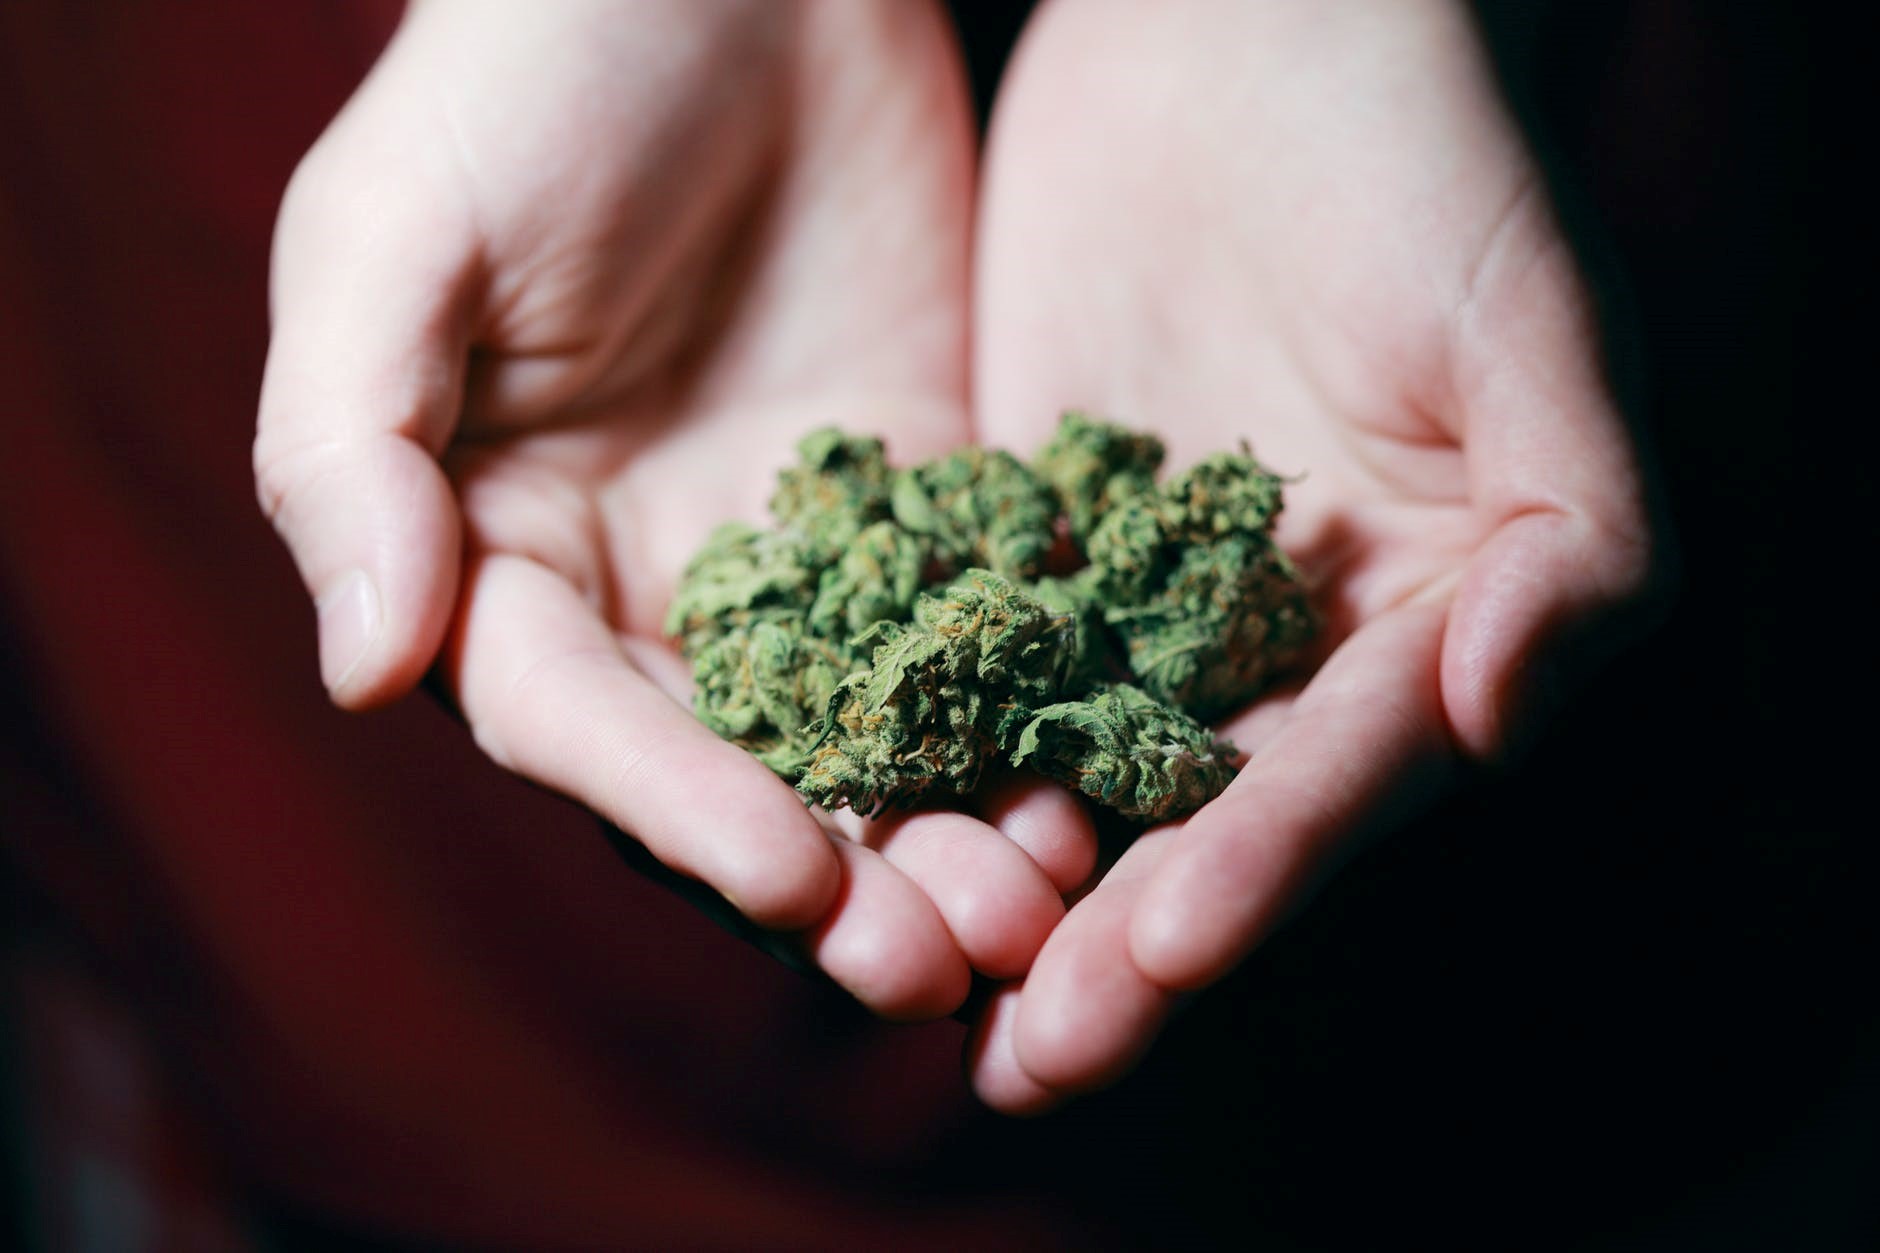 Marijuana plant in hands